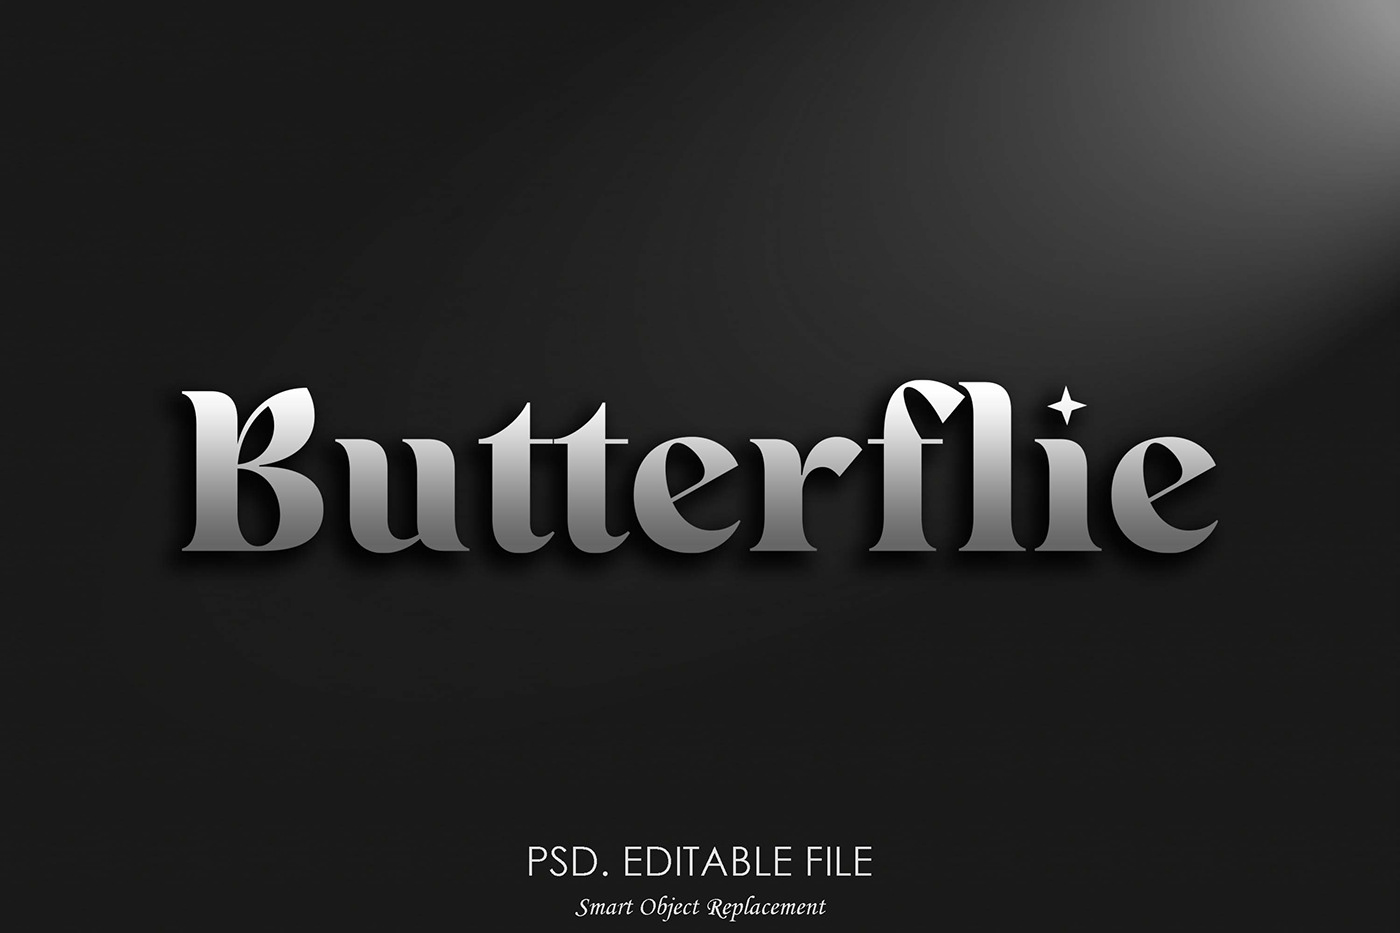 design Graphic Designer adobe illustrator Logo Design designer graphic Logotype butterfly buttterflye logo logo sell